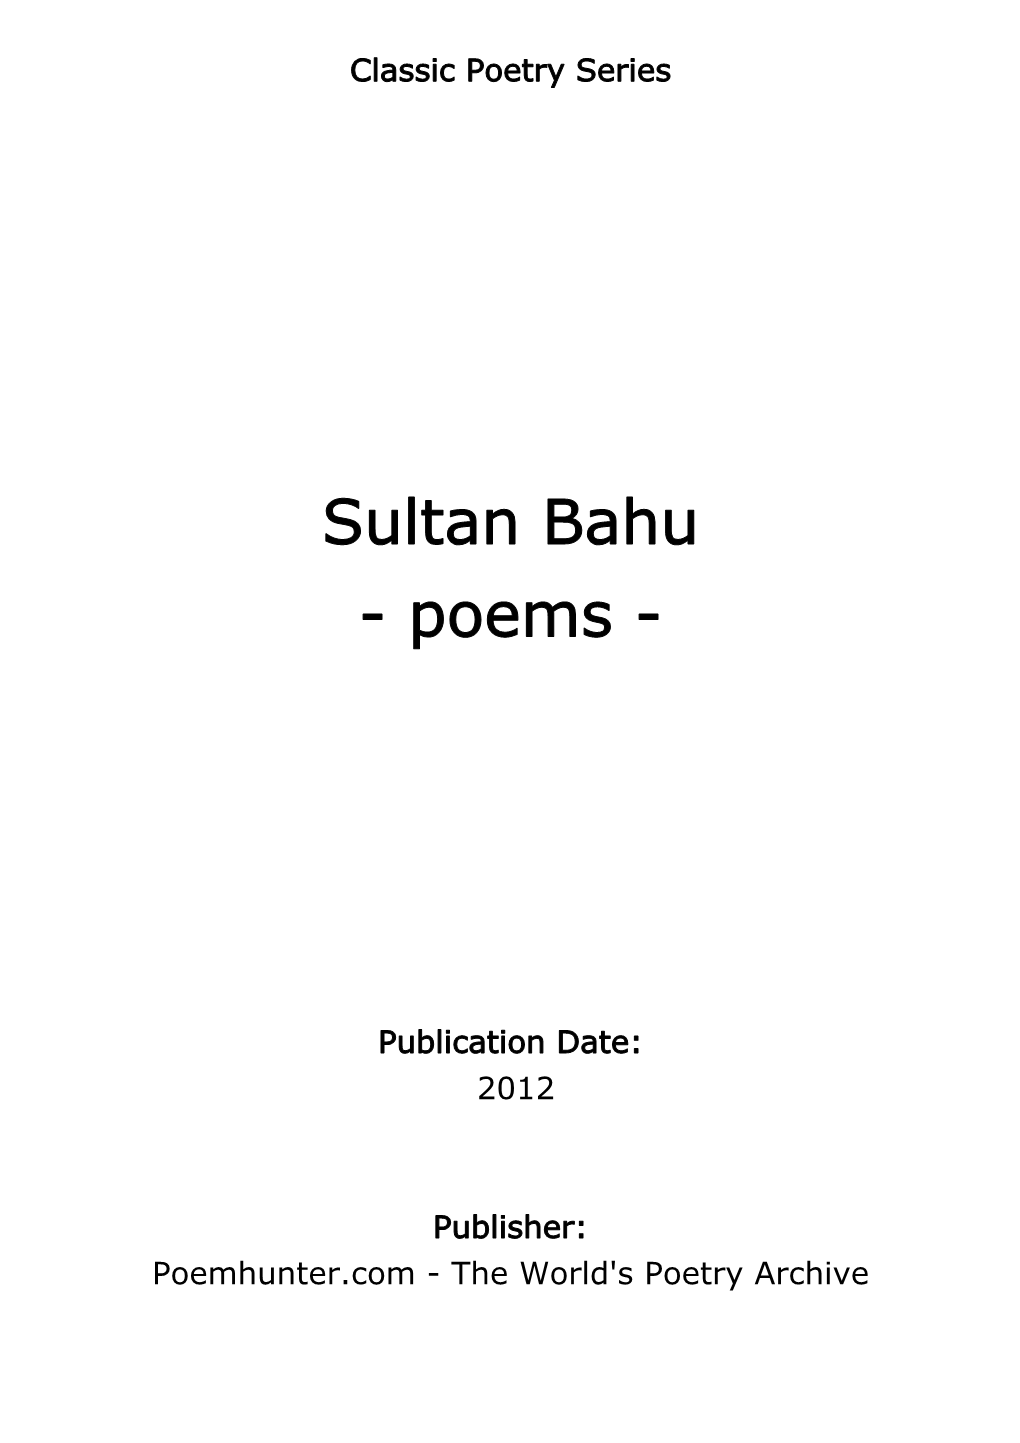 Sultan Bahu - Poems